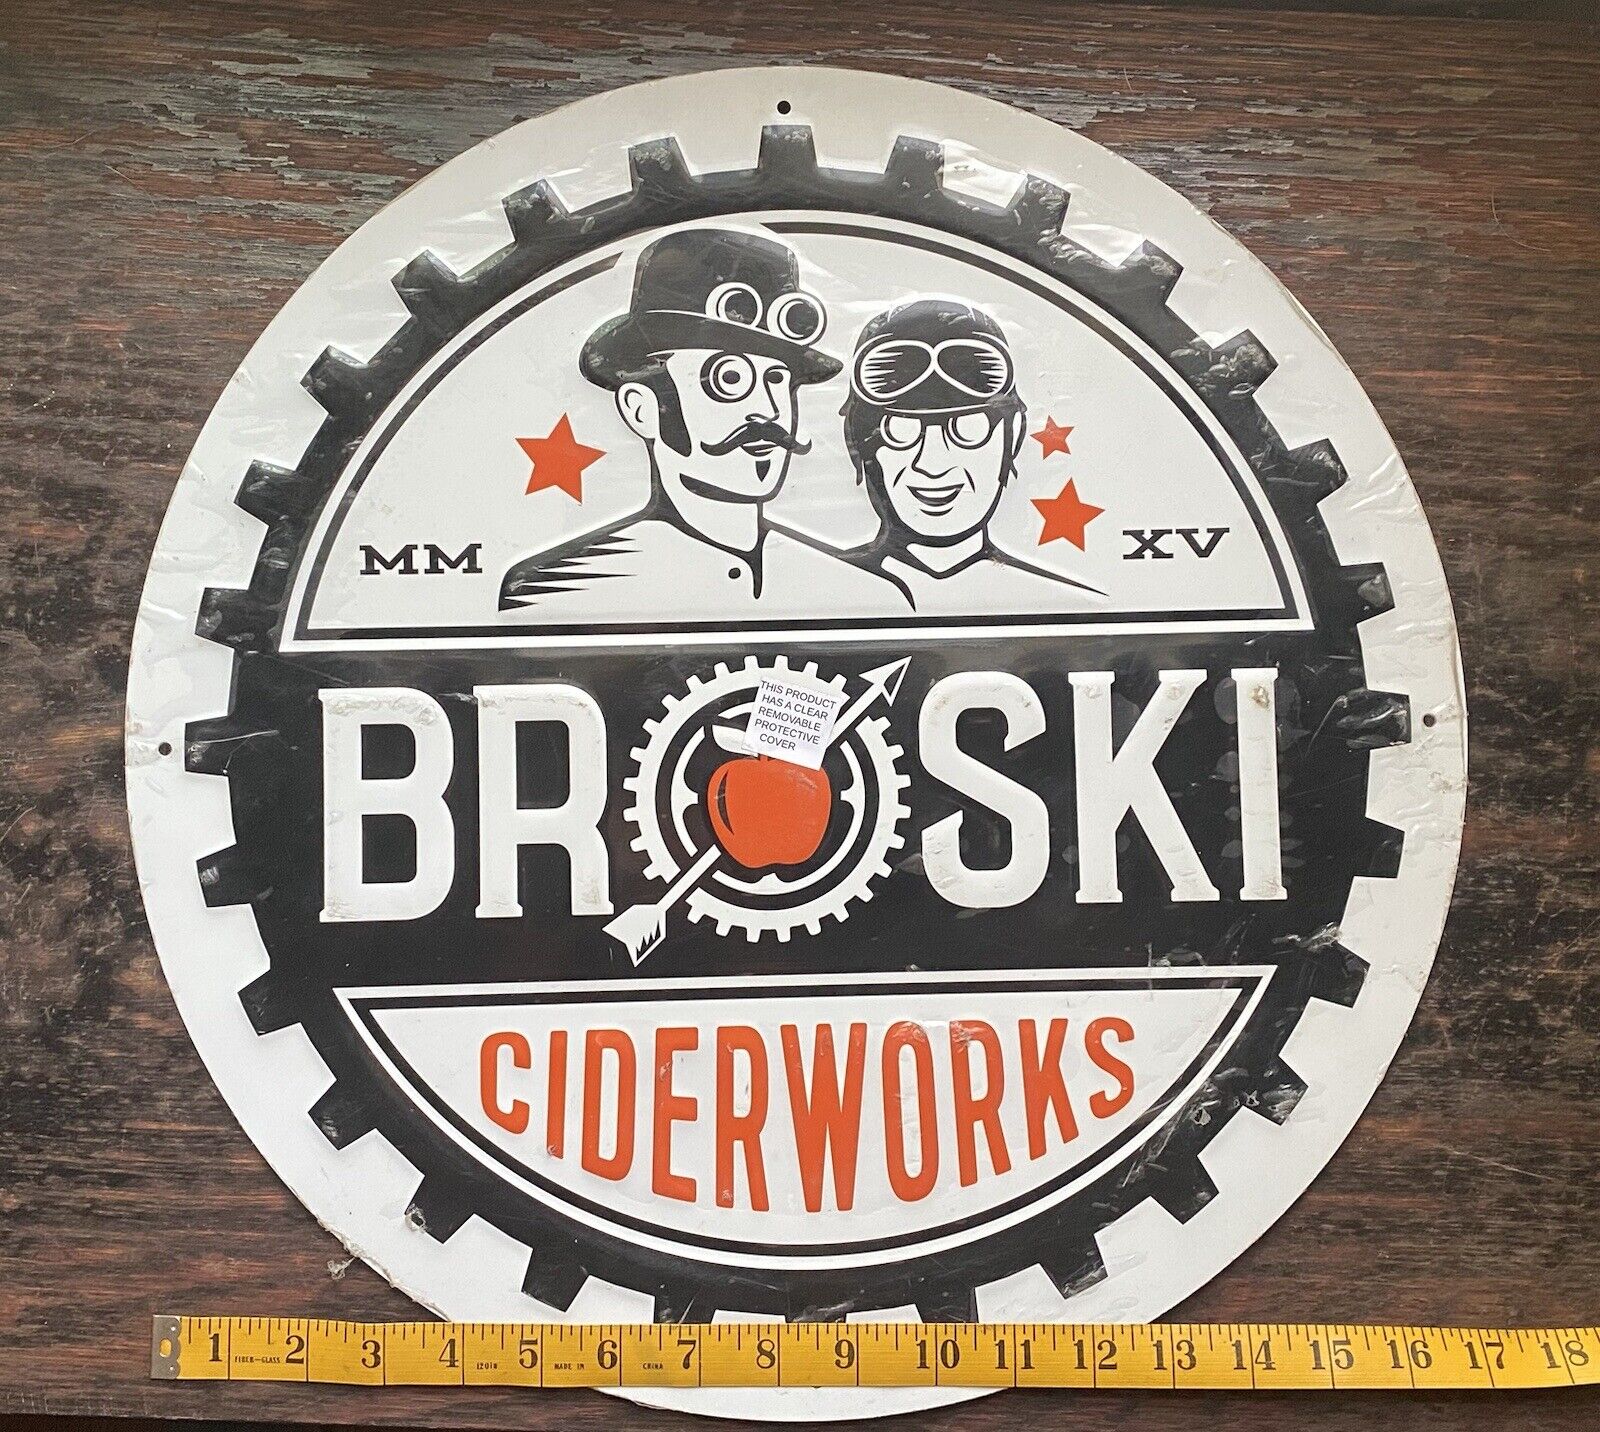 Ciderworks Broski Beer Sign